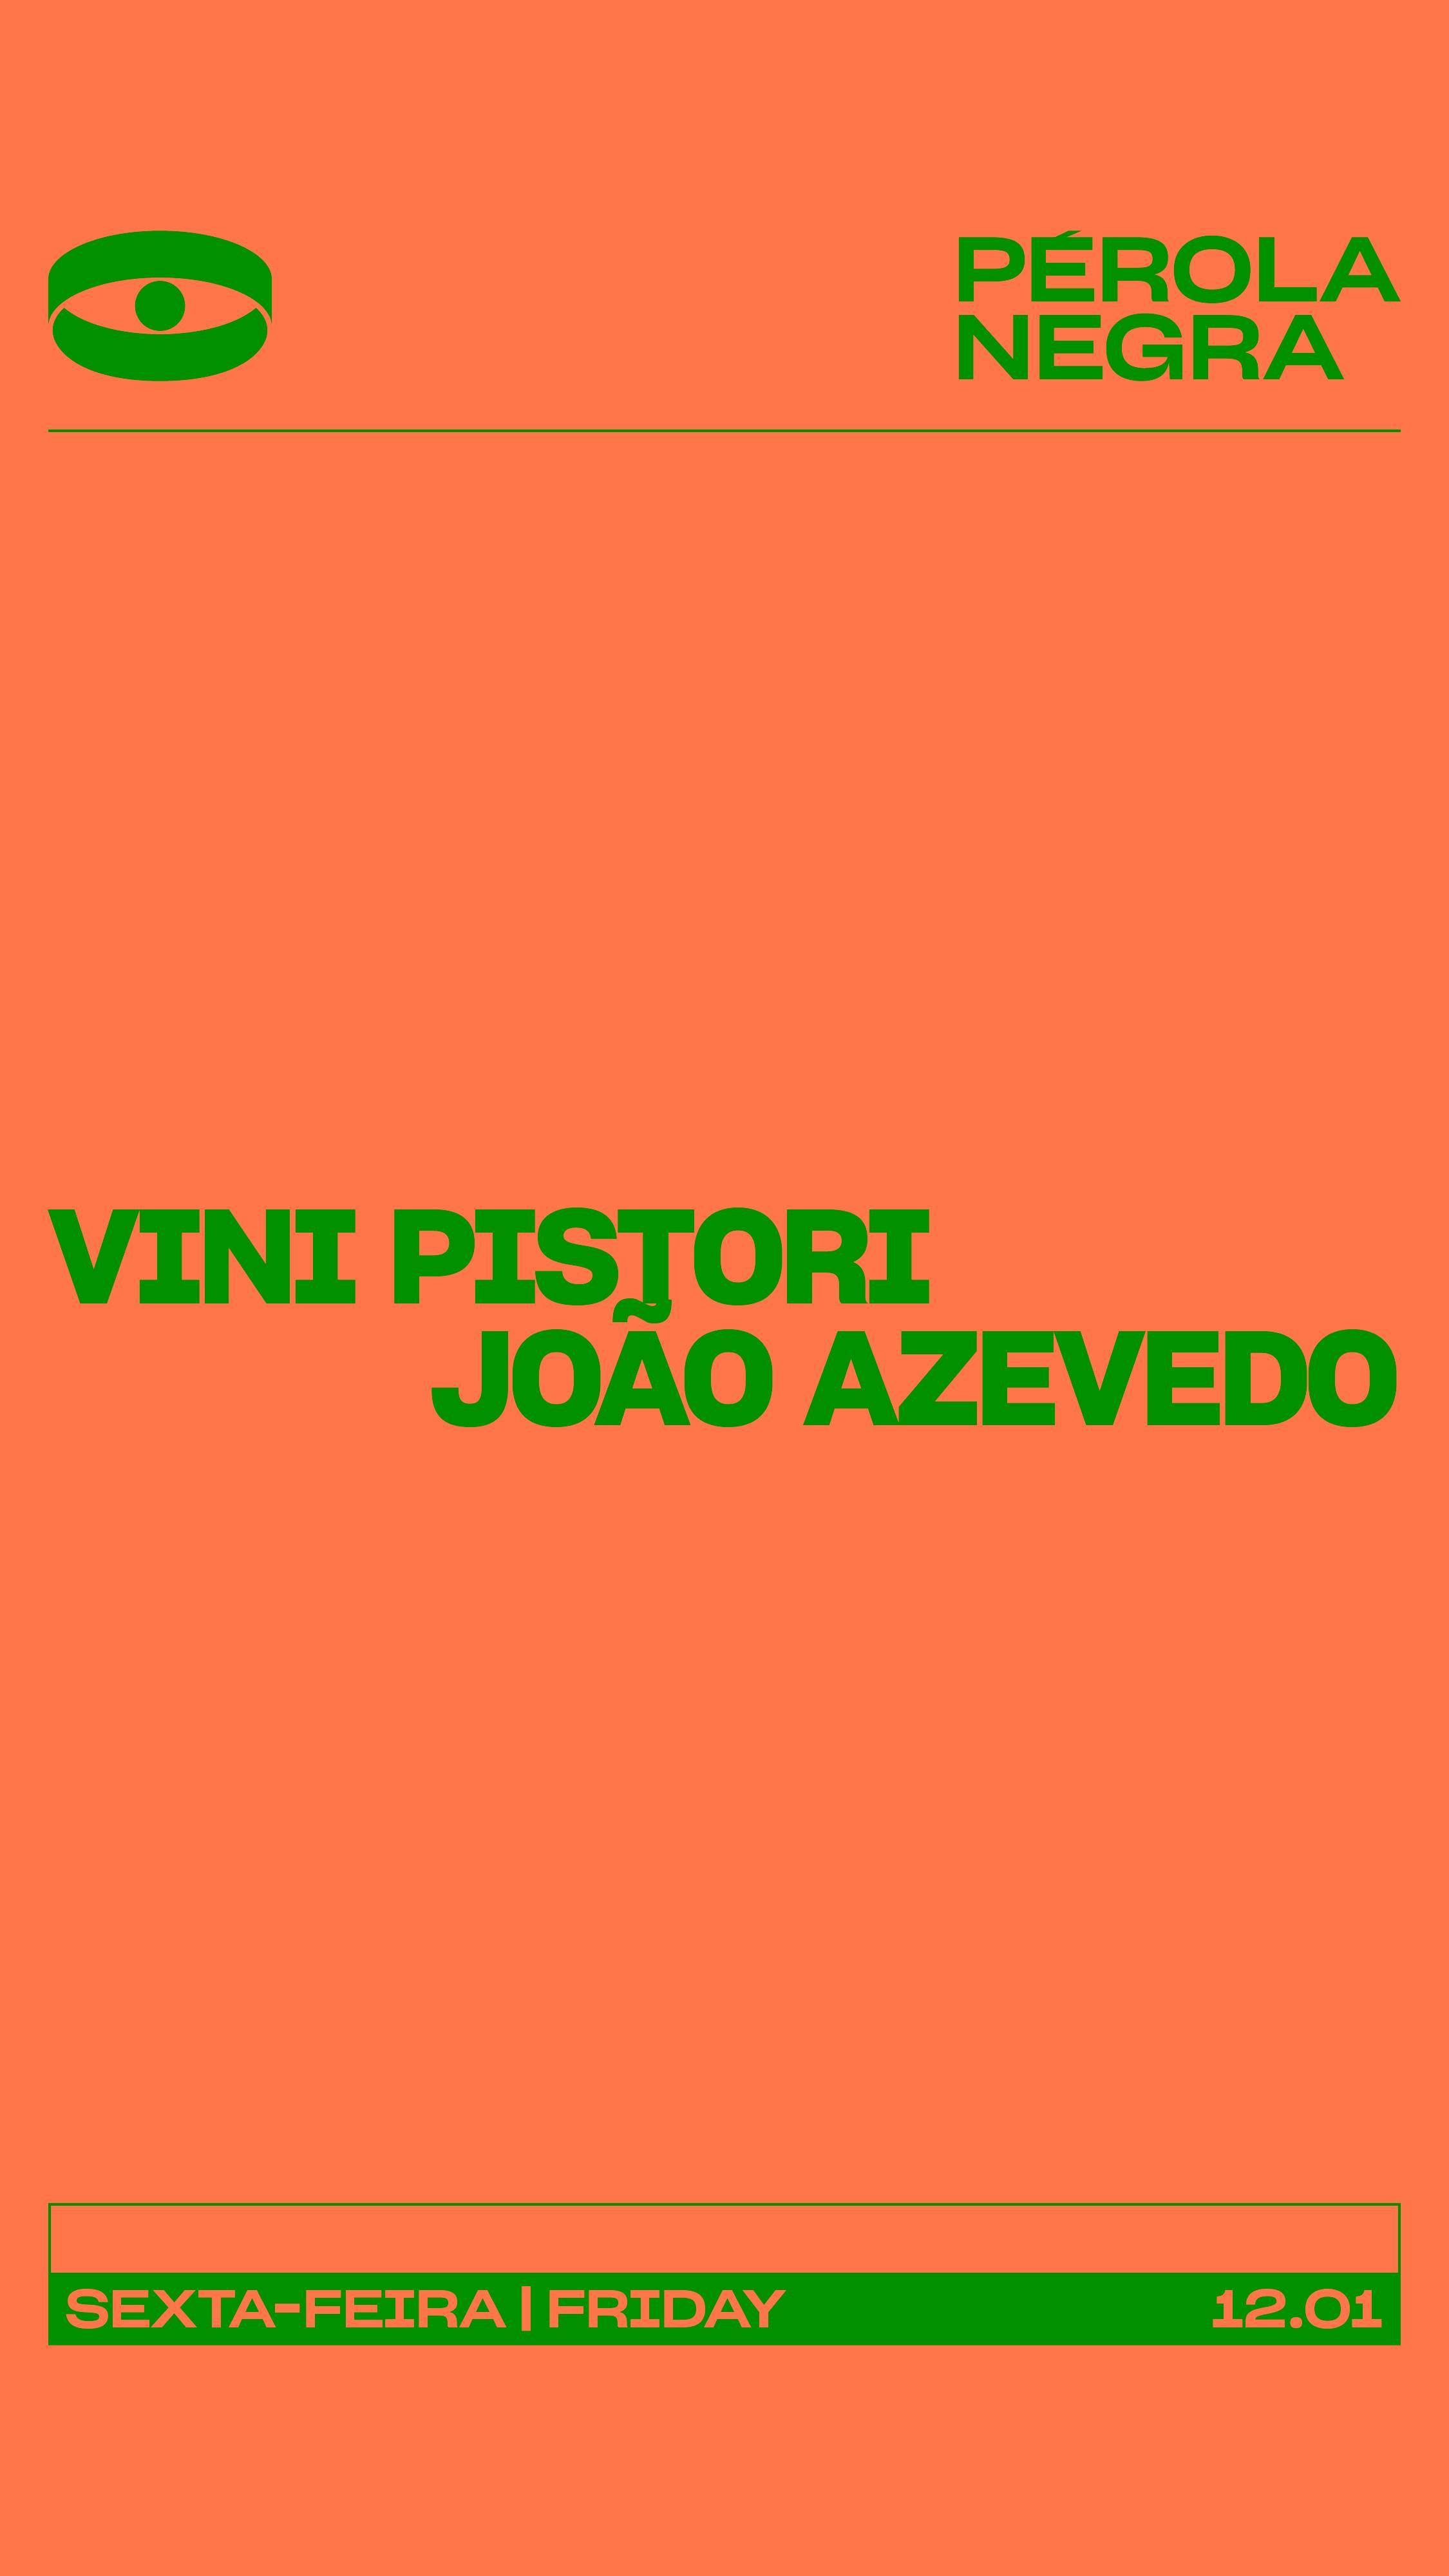 Vini Pistori - フライヤー表